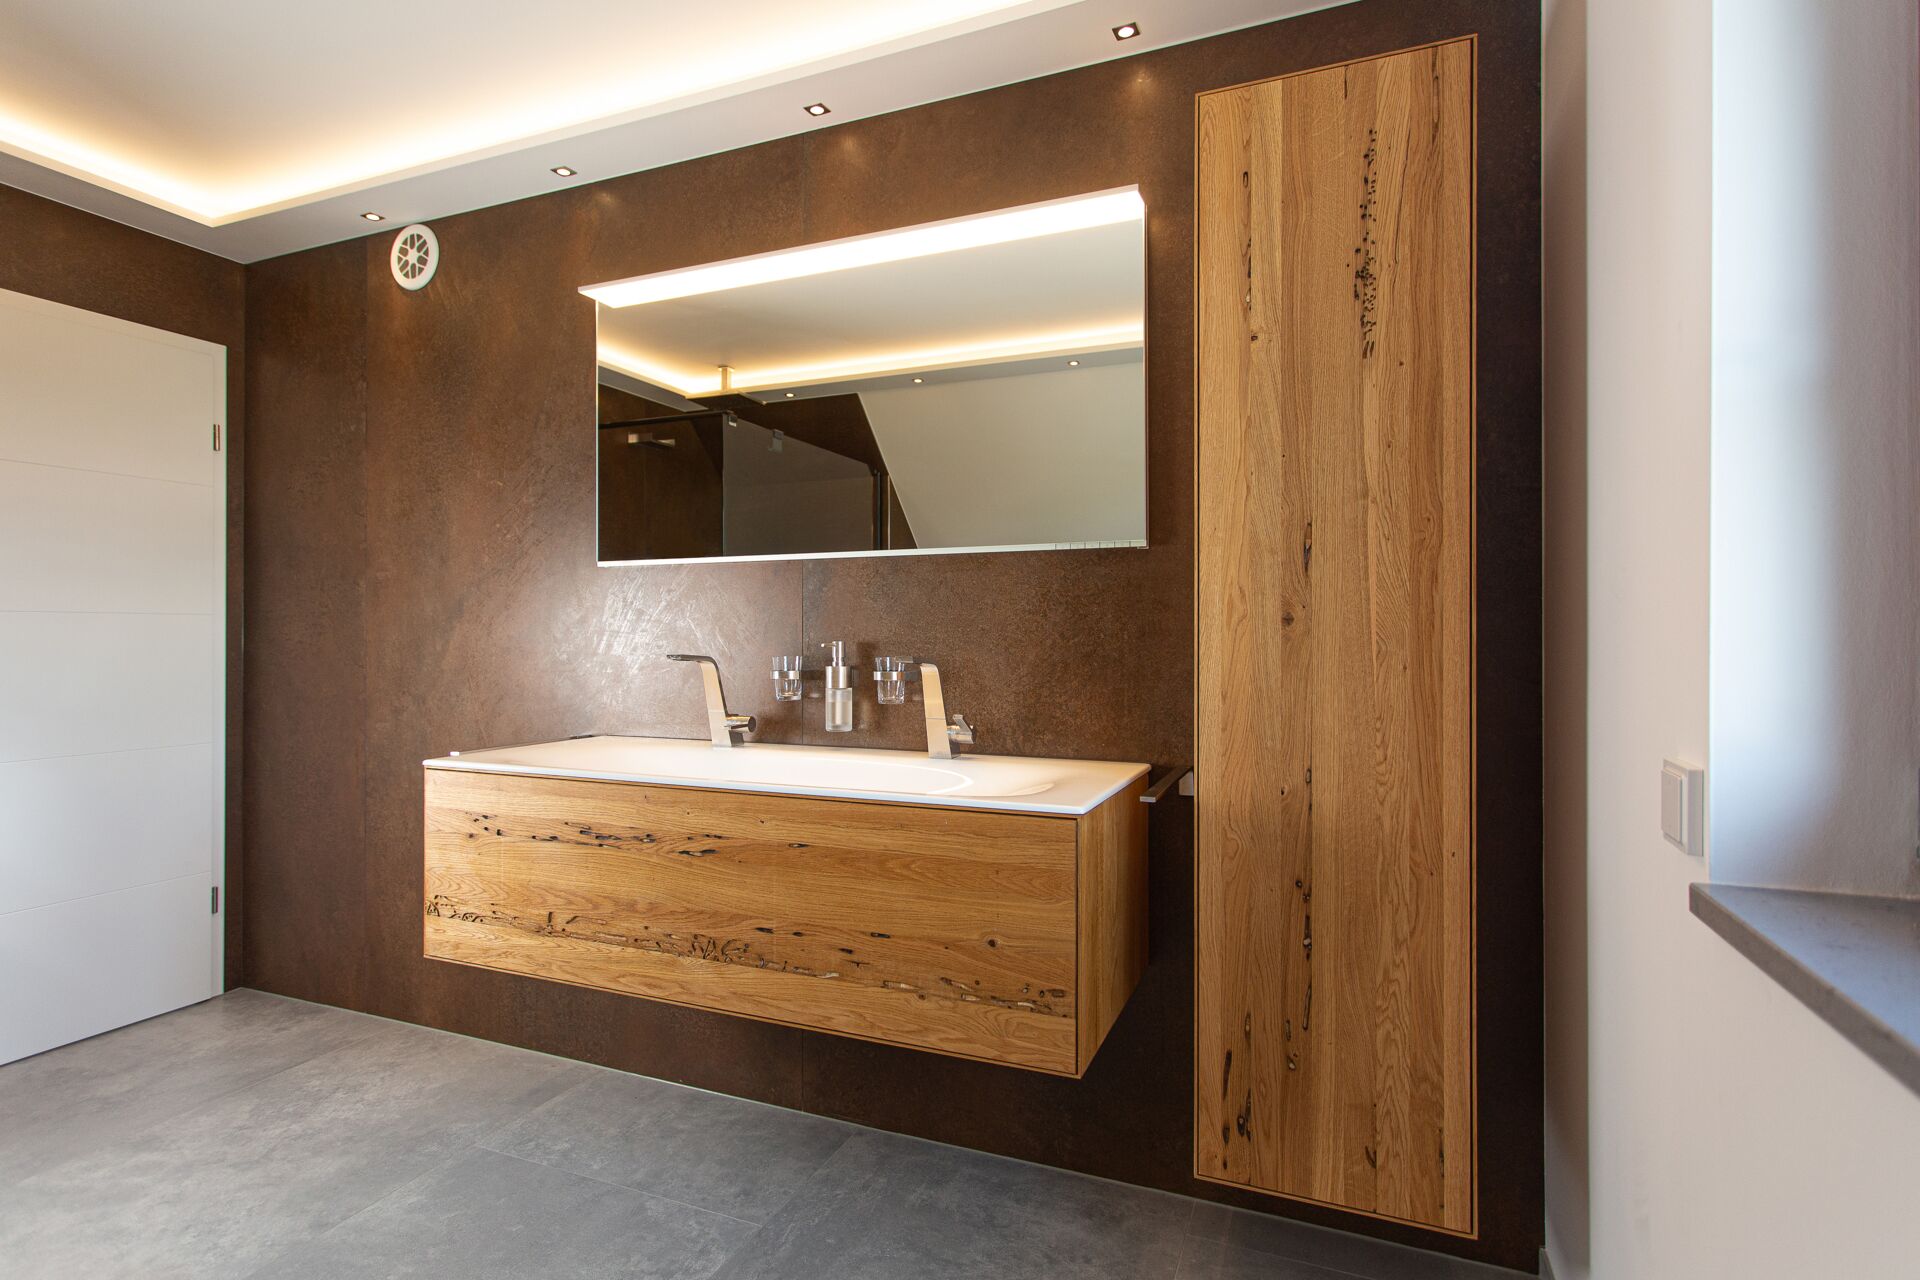 Blick auf hochwertige Waschtischmöbel-Anlage aus Massivholz mit beleuchtetem Spiegel